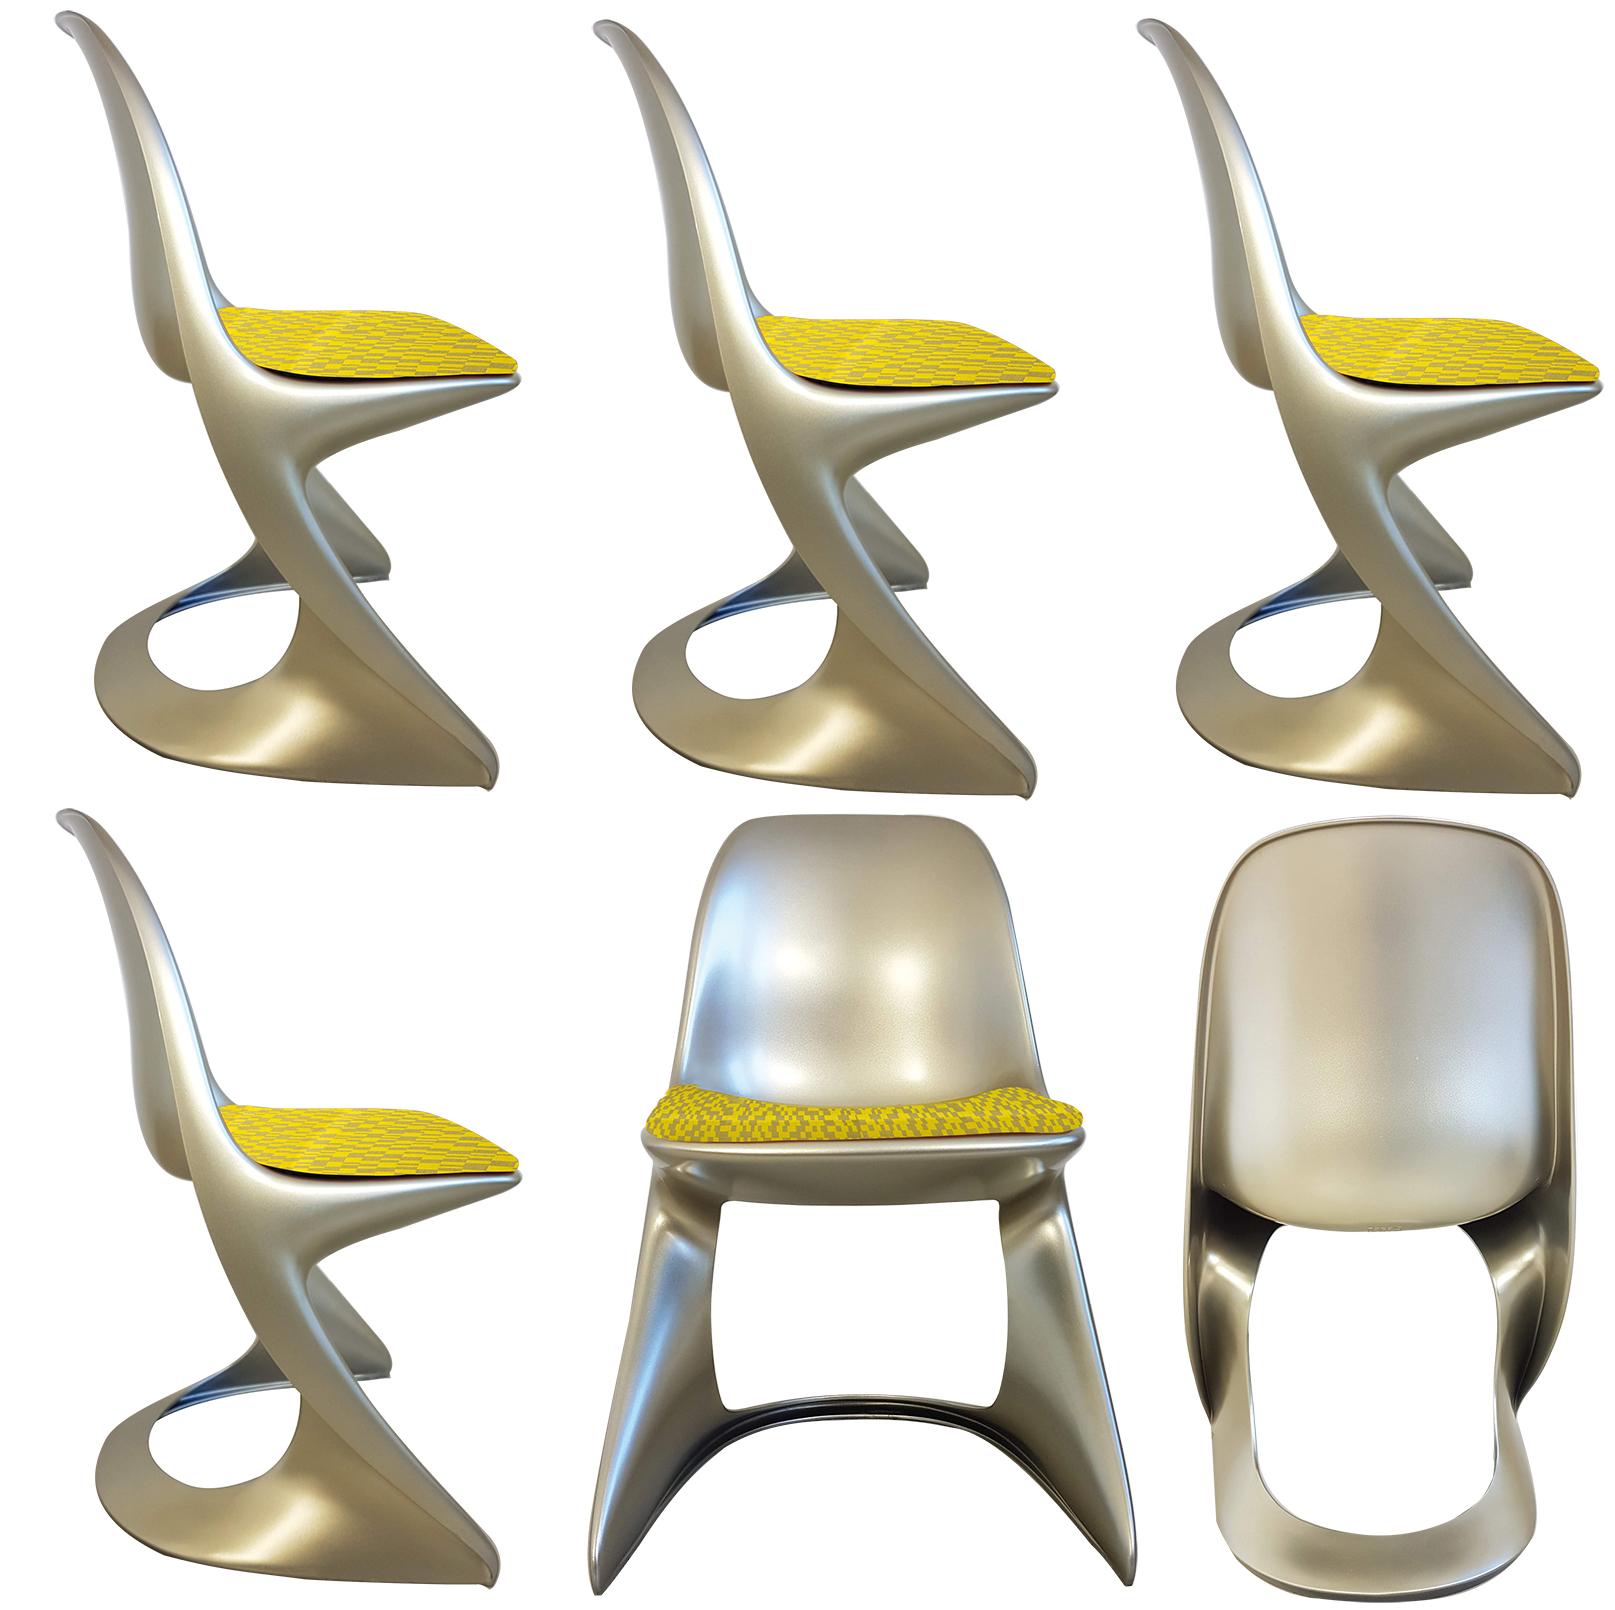 Ensemble inhabituel de chaises Ostergaard en polyéthylène laqué couleur métallique fabriquées par rotomoulage fixe (usage intérieur/extérieur) avec de nouveaux sièges en tissu jacquard tissé géométrique 